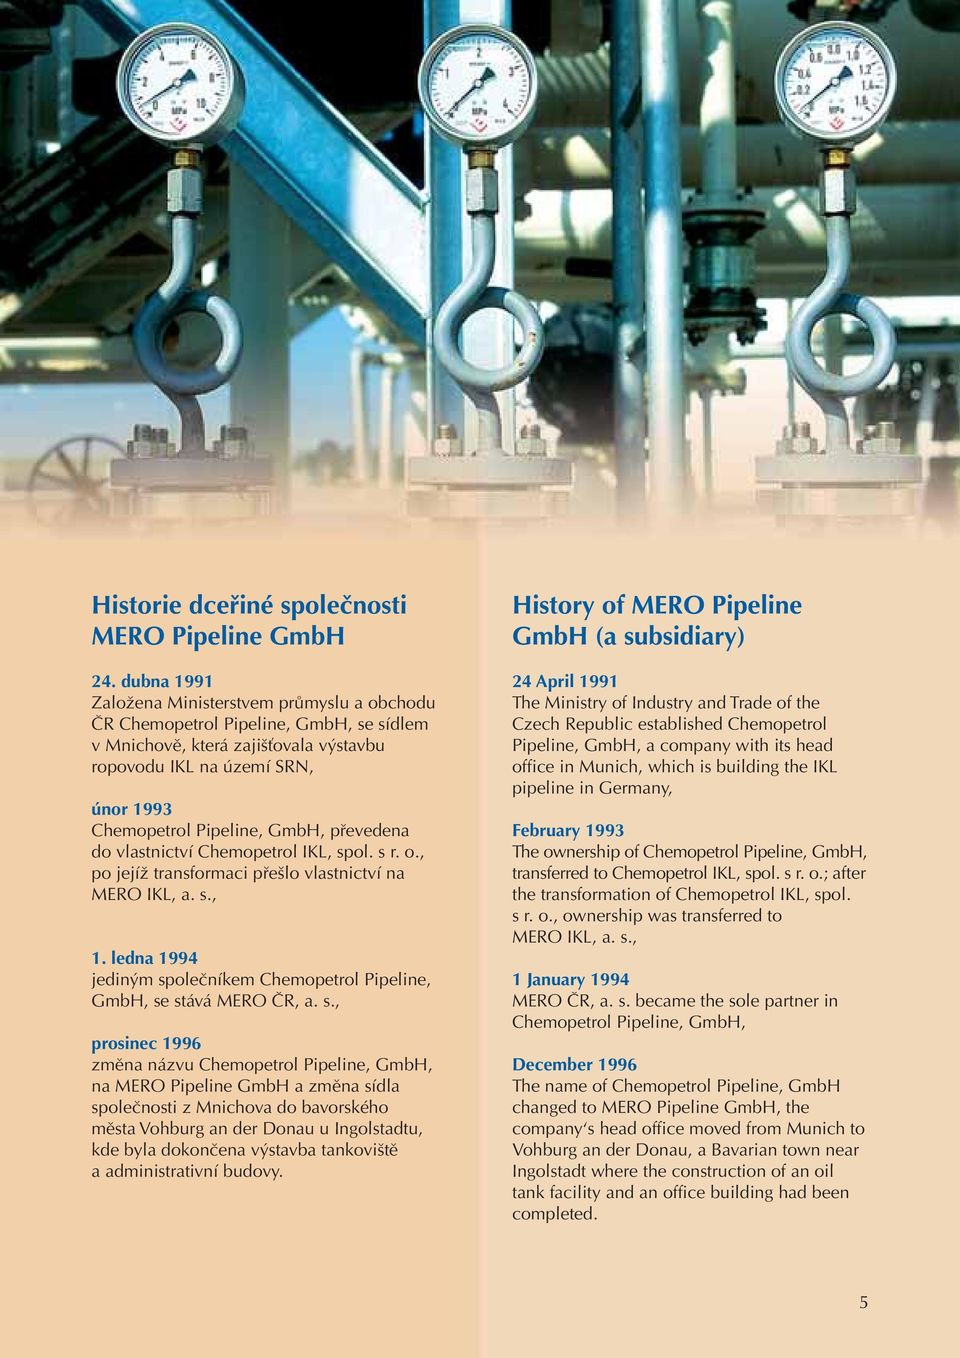 převedena do vlastnictví Chemopetrol IKL, spol. s r. o., po jejíž transformaci přešlo vlastnictví na MERO IKL, a. s., 1. ledna 1994 jediným společníkem Chemopetrol Pipeline, GmbH, se stává MERO ČR, a.